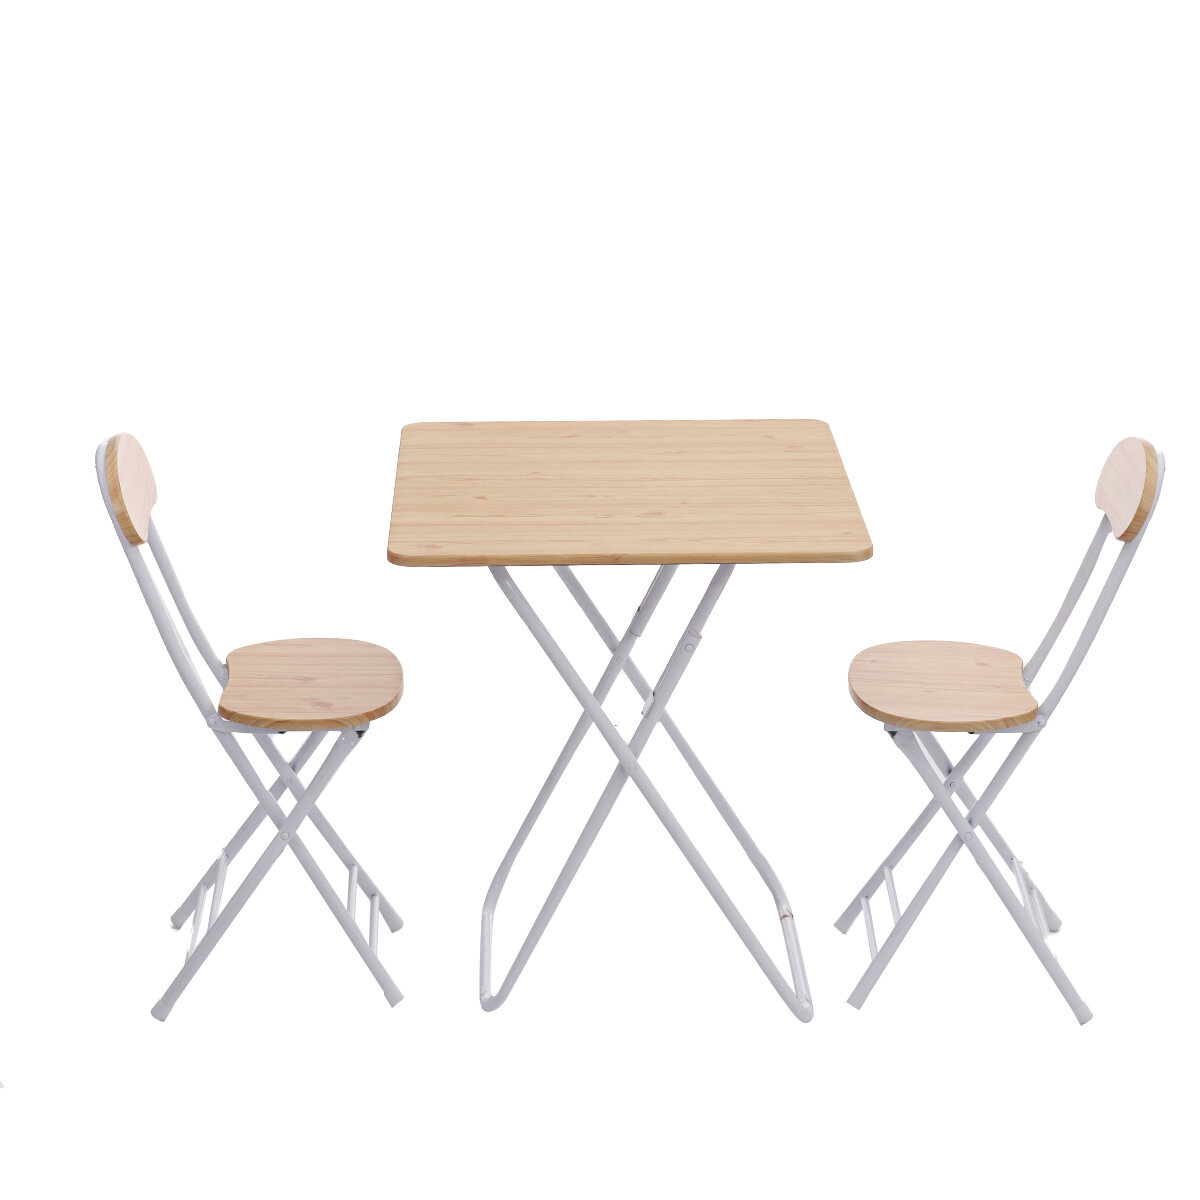 Set van 3 opvouwbare tafels en stoelen, vierkant en draagbaar, voor buiten dineren, kamperen of een picknick.